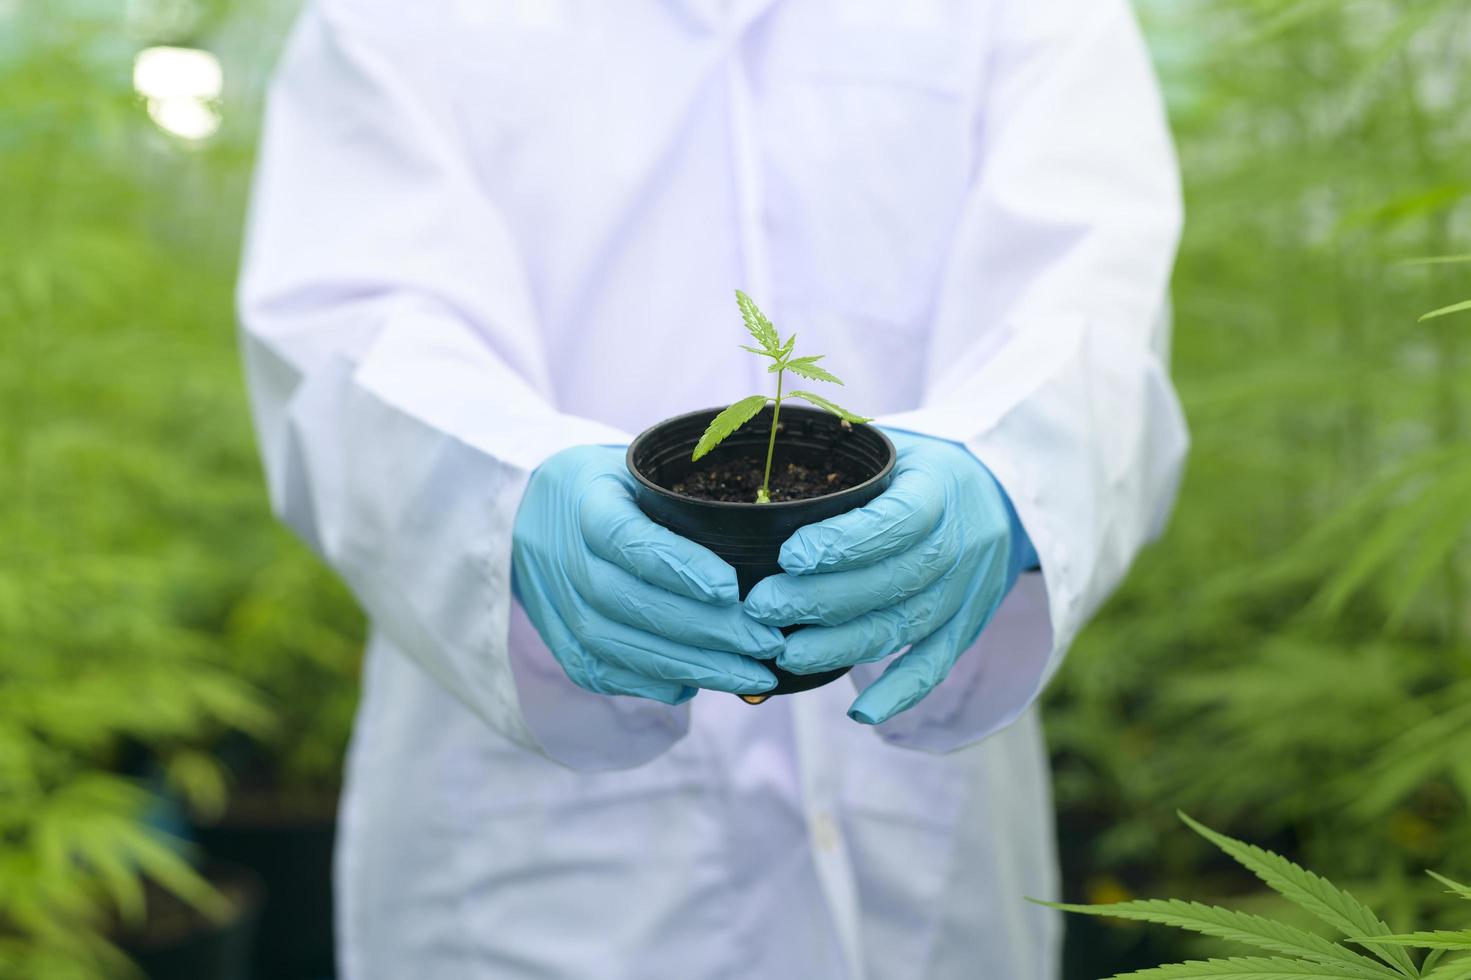 um cientista está segurando mudas de cannabis em fazenda legalizada. foto